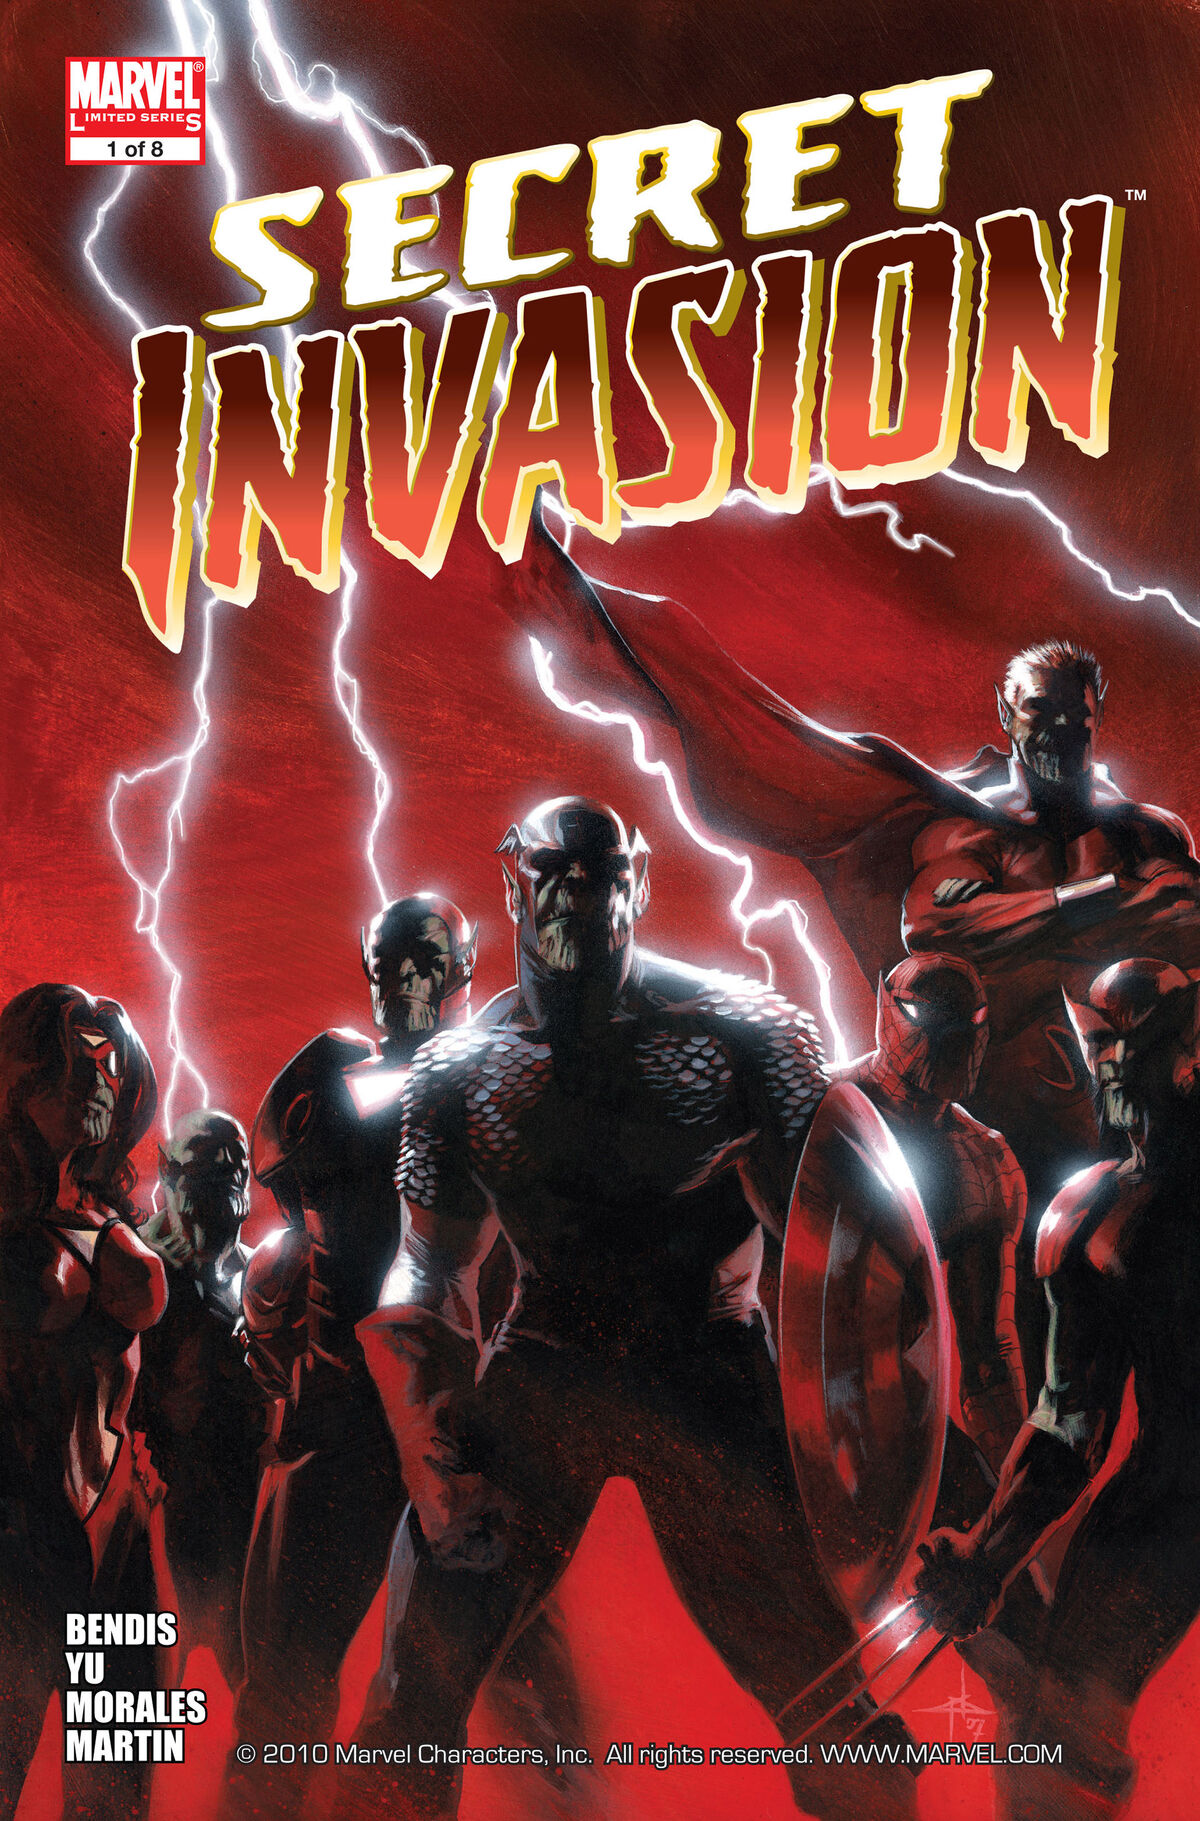 Nick Fury Fights the Super-Skrull in Marvel's Secret Invasion Finale Trailer